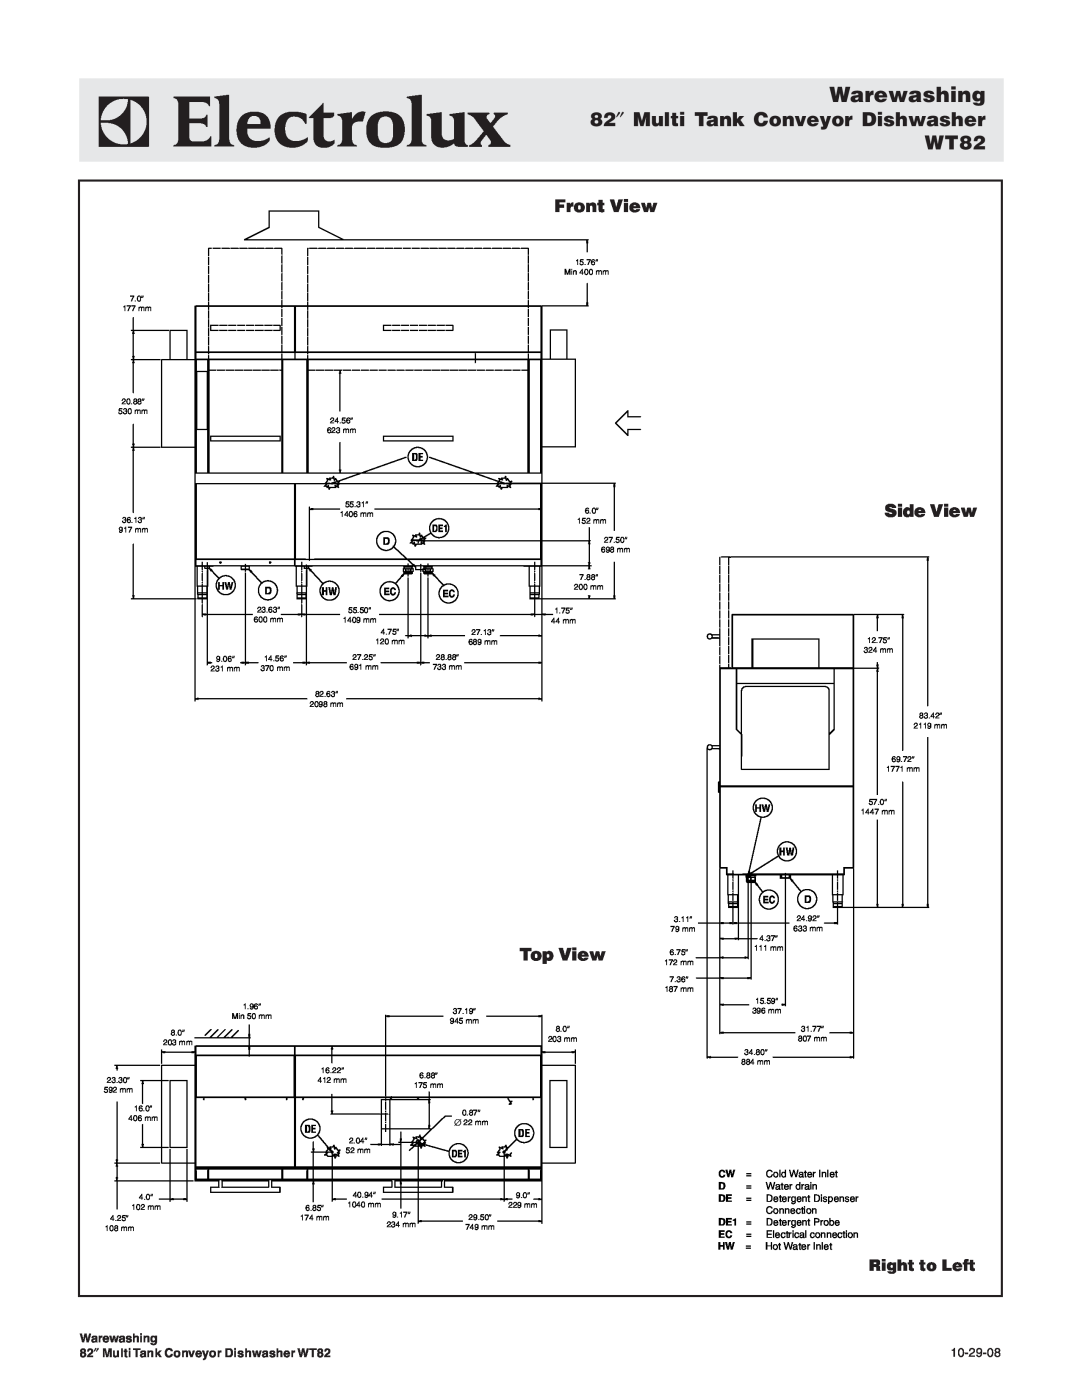 Electrolux wt82, 534180 82″ Multi Tank Conveyor Dishwasher, Warewashing, WT82, Front View, Side View, Top View, 10-29-08 